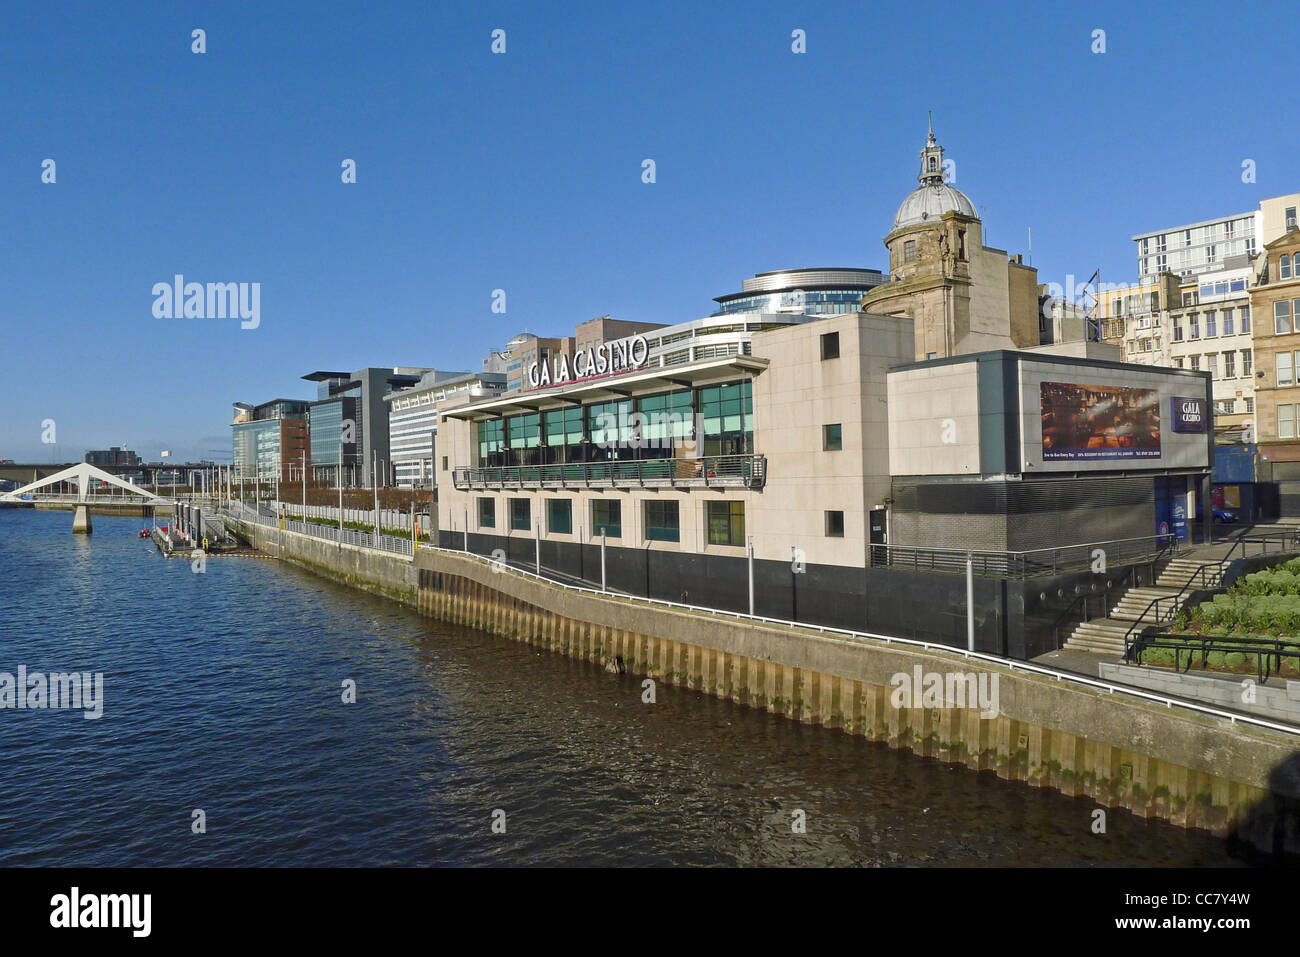 Edifici di Tradeston pedonale zona ponte lungo Atlantic Quay sul fiume Clyde a Glasgow per il Gala Casino Foto Stock